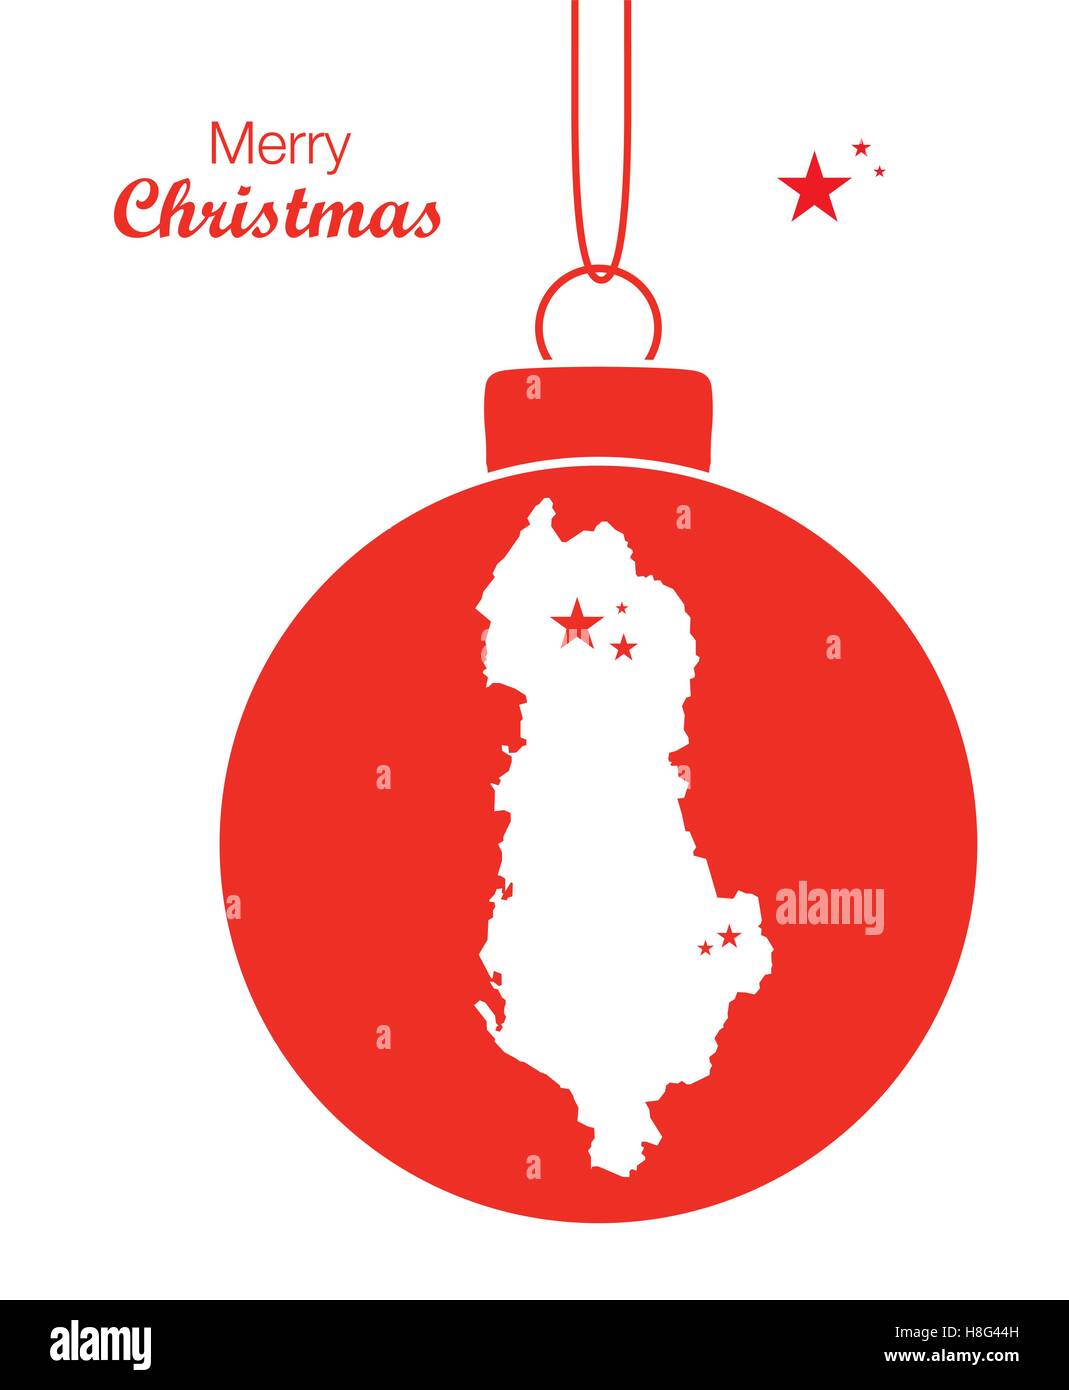 Buon Natale Albanese.Buon Natale Mappa Albania Immagine E Vettoriale Alamy